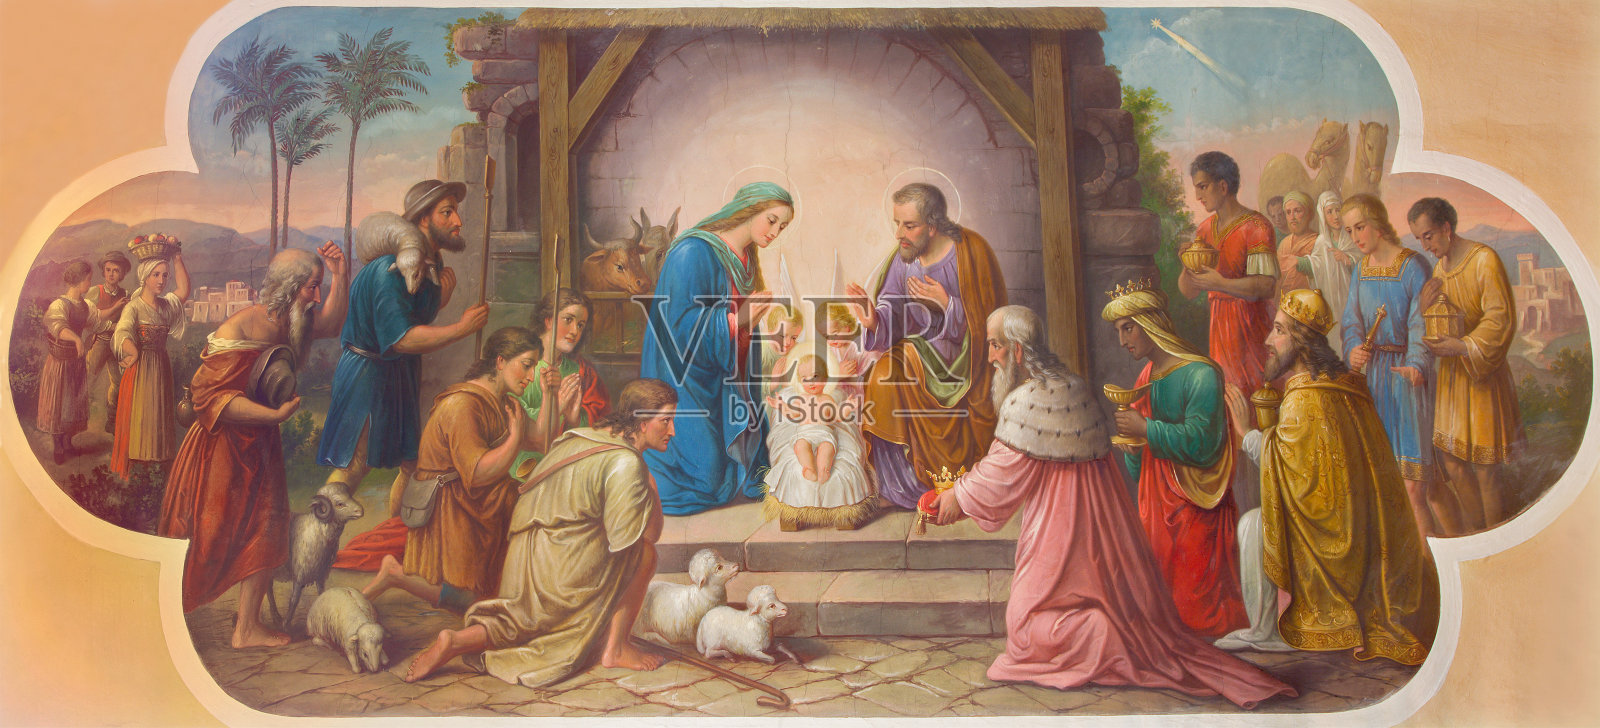 维也纳——Erloserkirche教堂的耶稣诞生场景壁画。插画图片素材